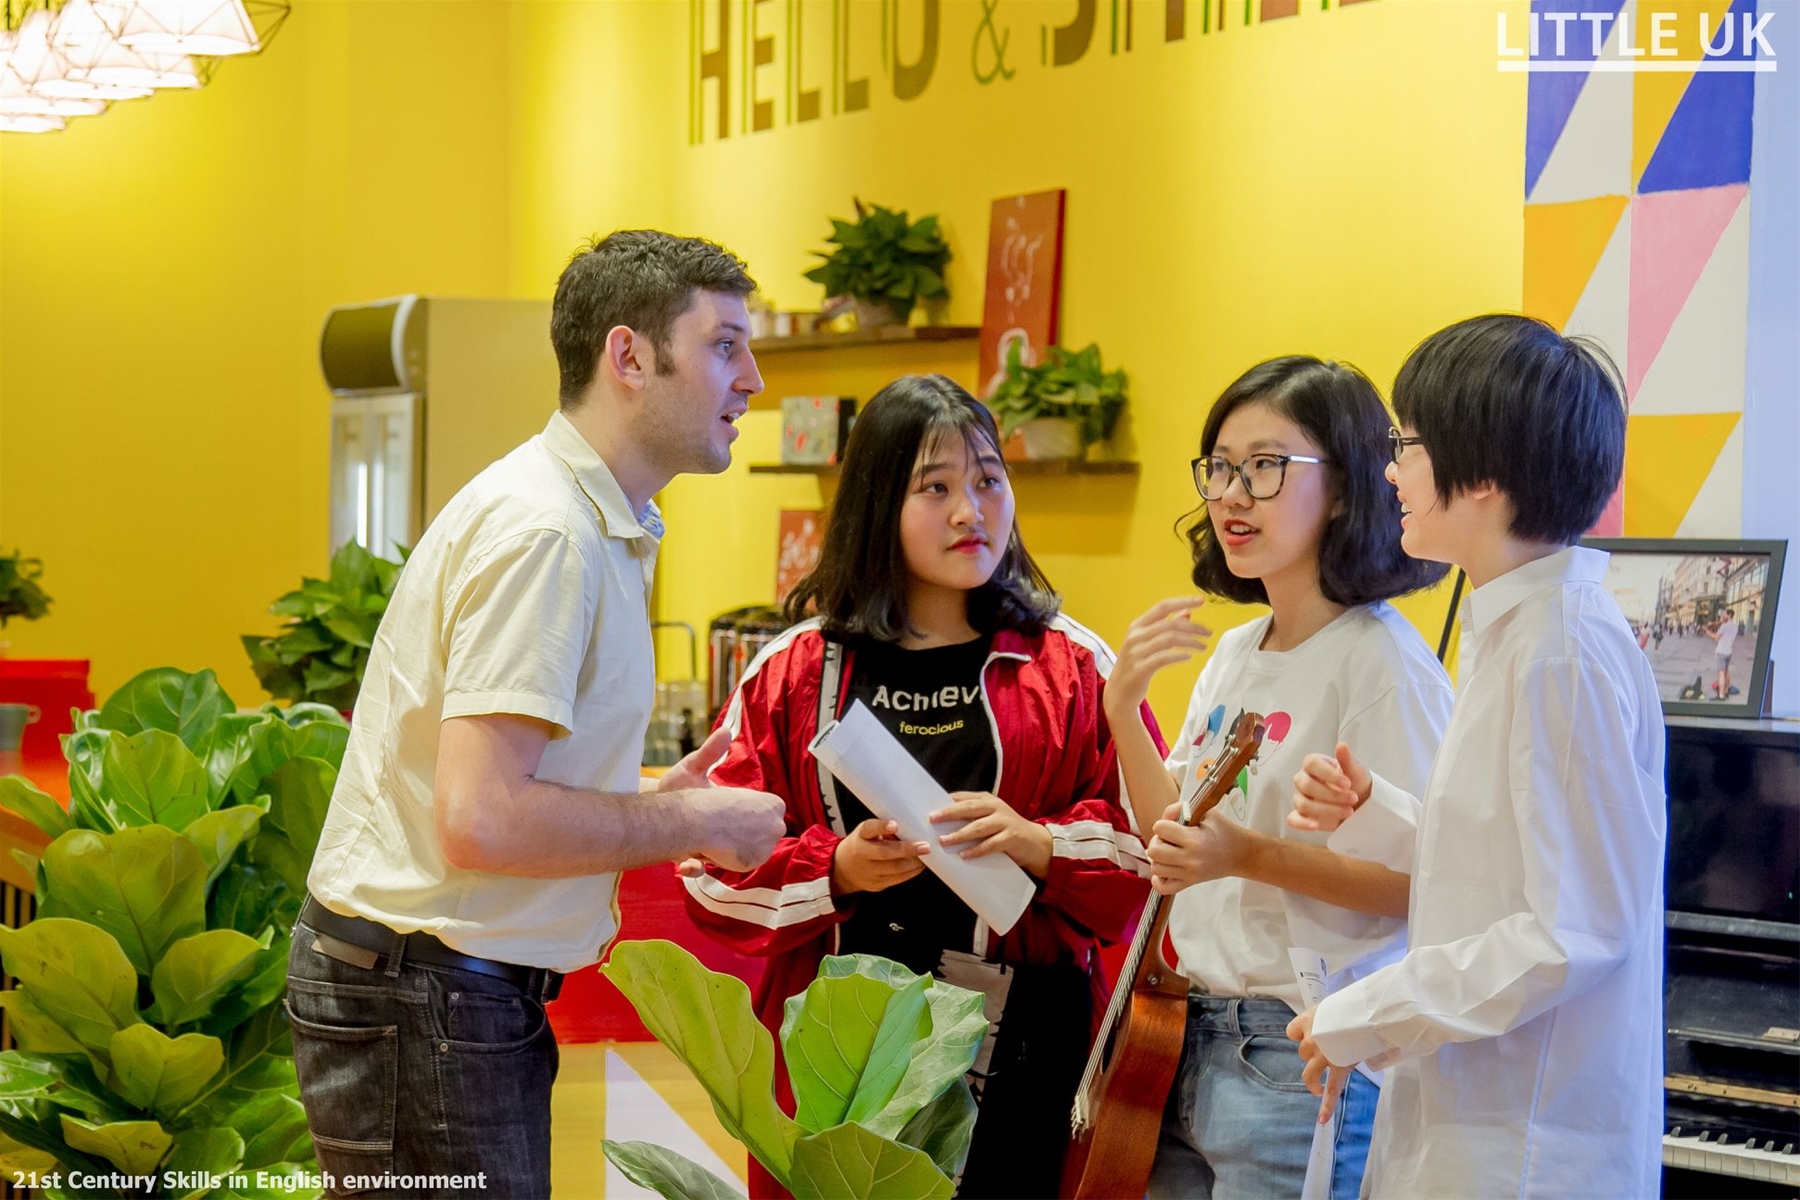 FPT mở Phòng chờ du học hỗ trợ du học sinh Việt Nam mùa Covid-19